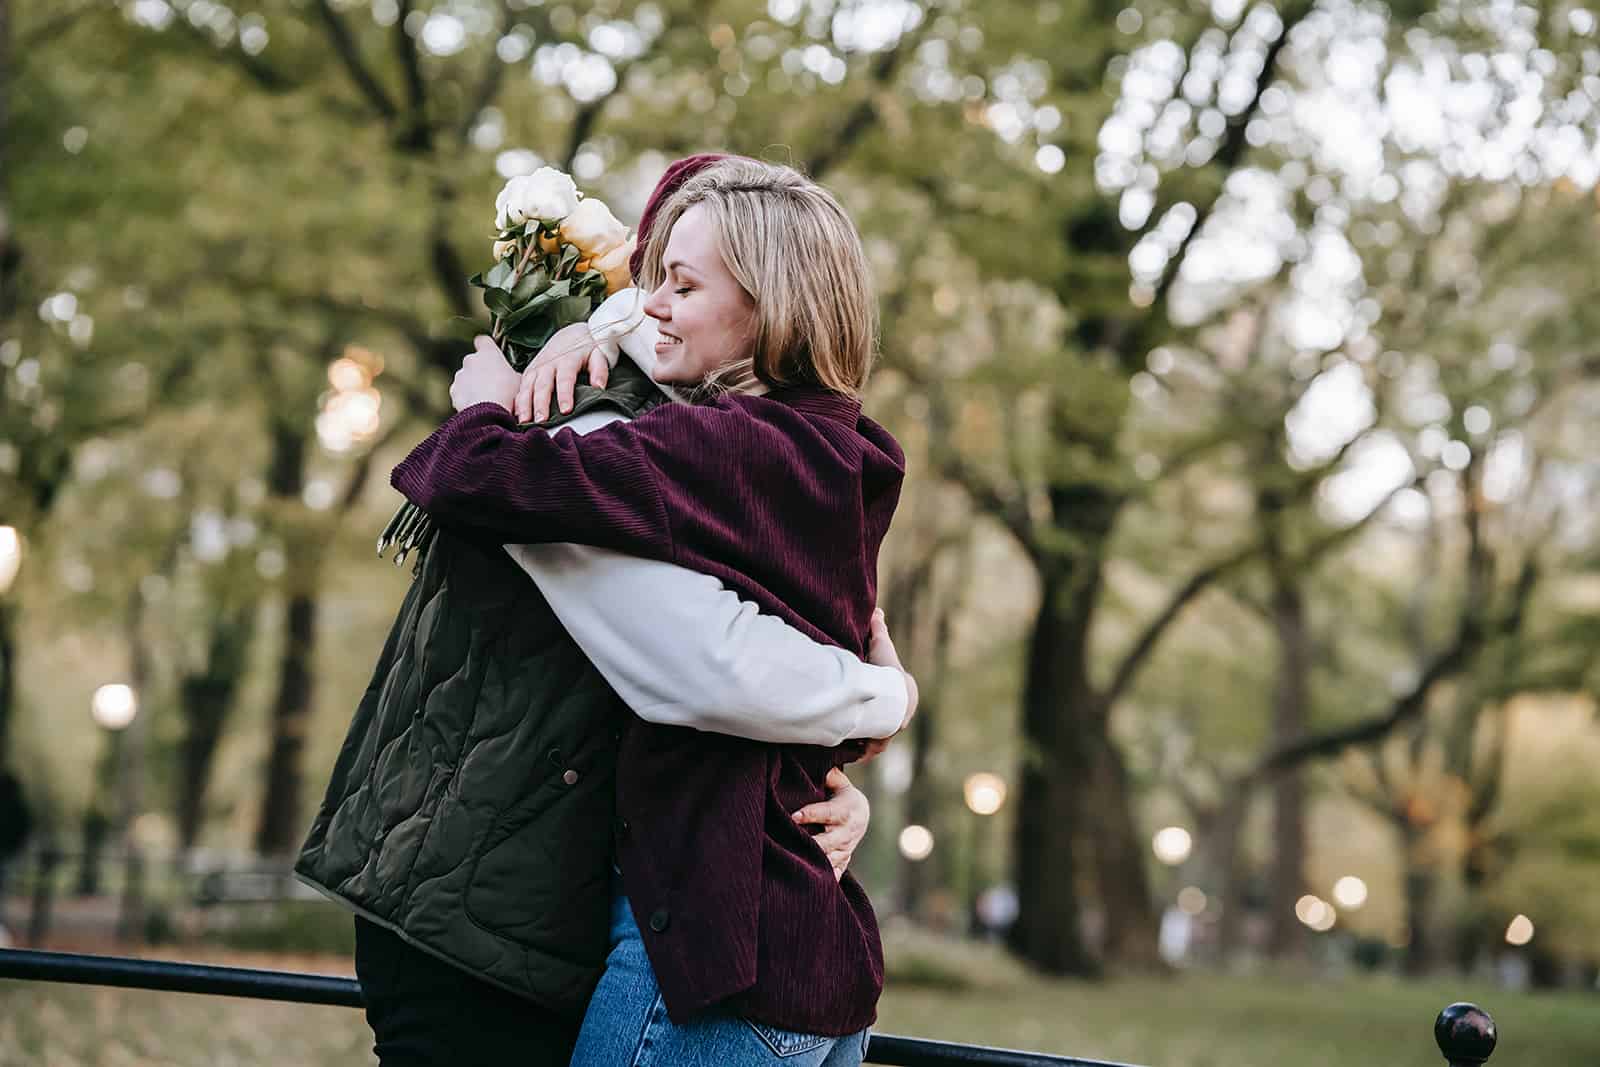 uomo e donna che si abbracciano nel parco mentre la donna tiene in mano un bouquet di rose bianche